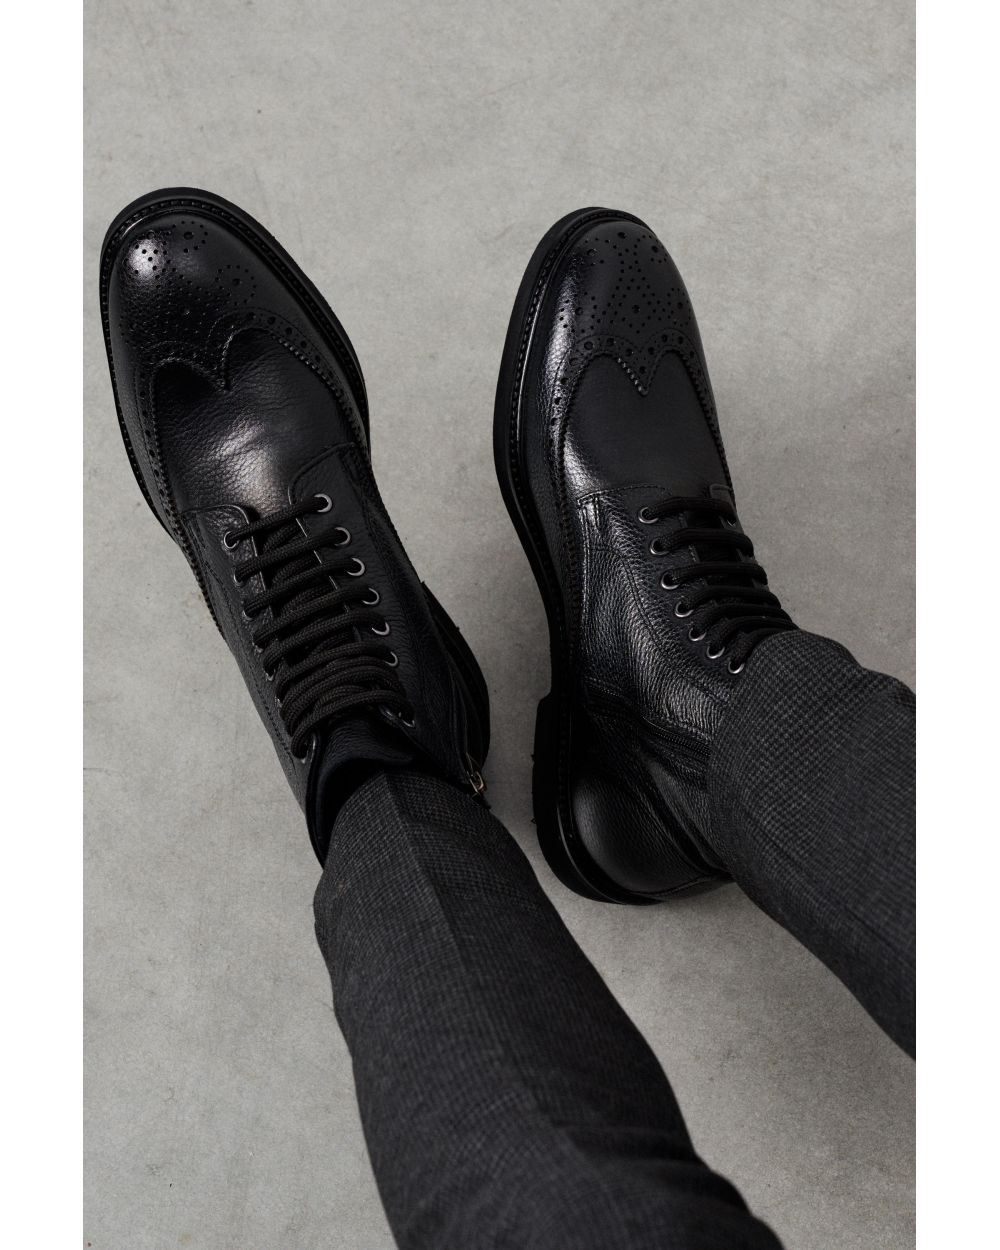 Ботинки мужские дерби броги черные на шнурках и замке, зернистая кожа